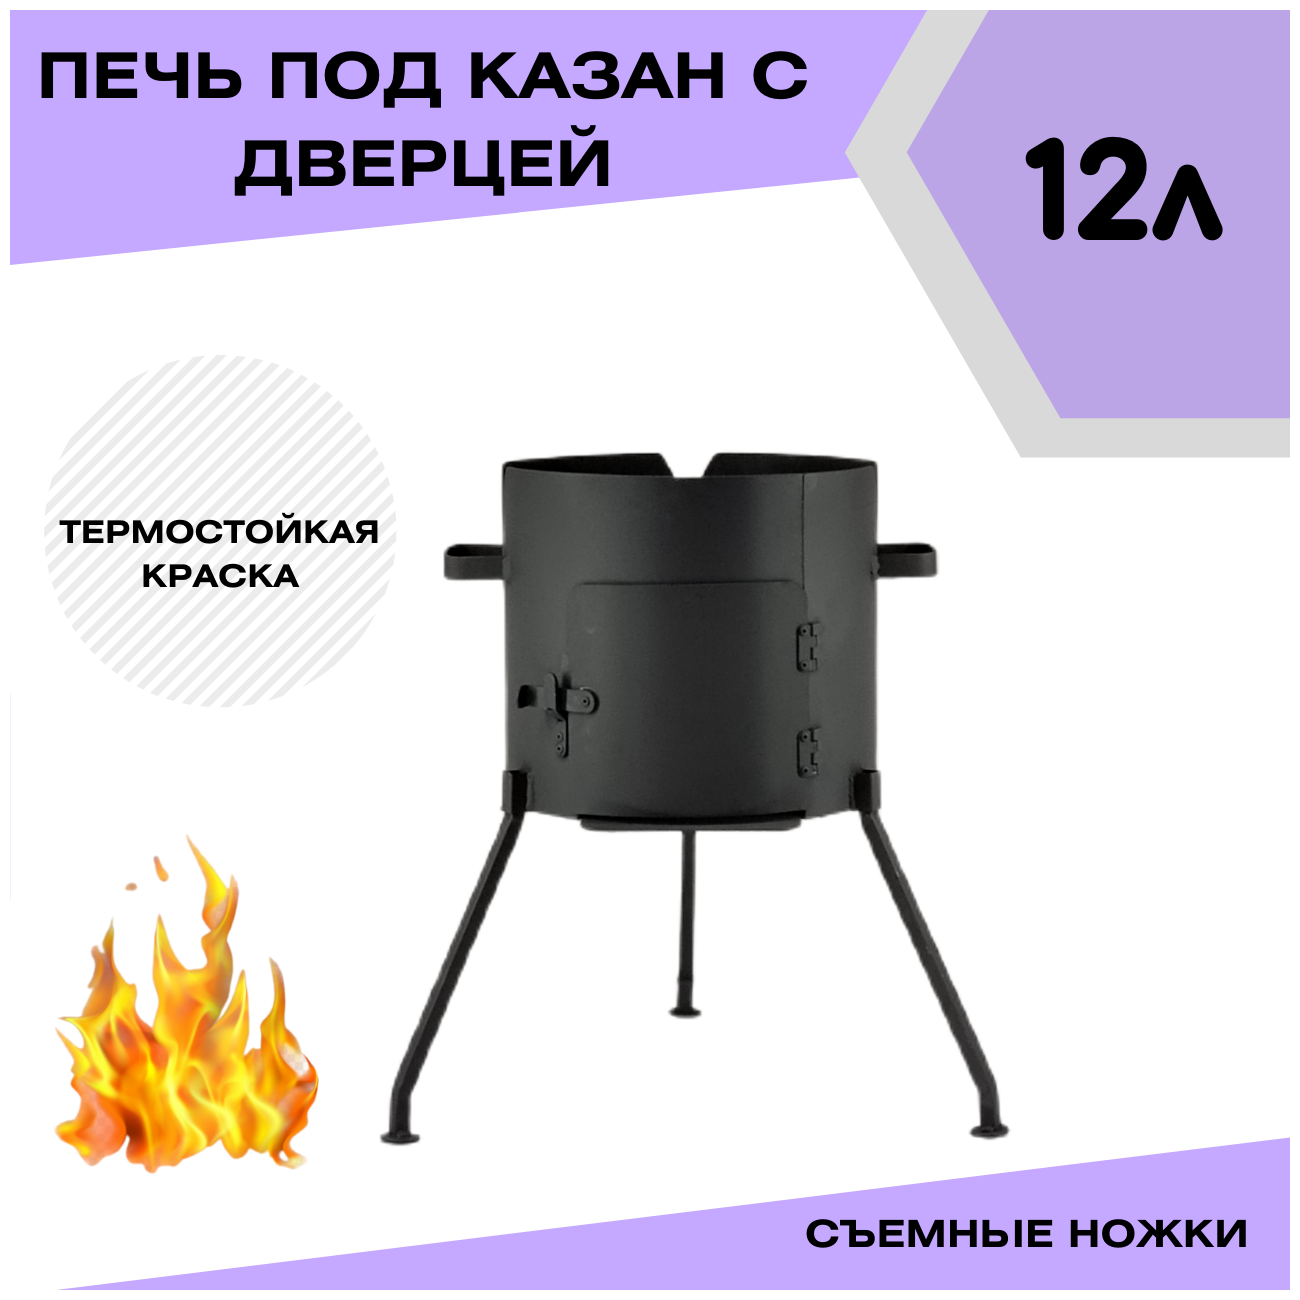 Печка с дверцей под казан 12 литров съемные ножки (разборная) Svargan